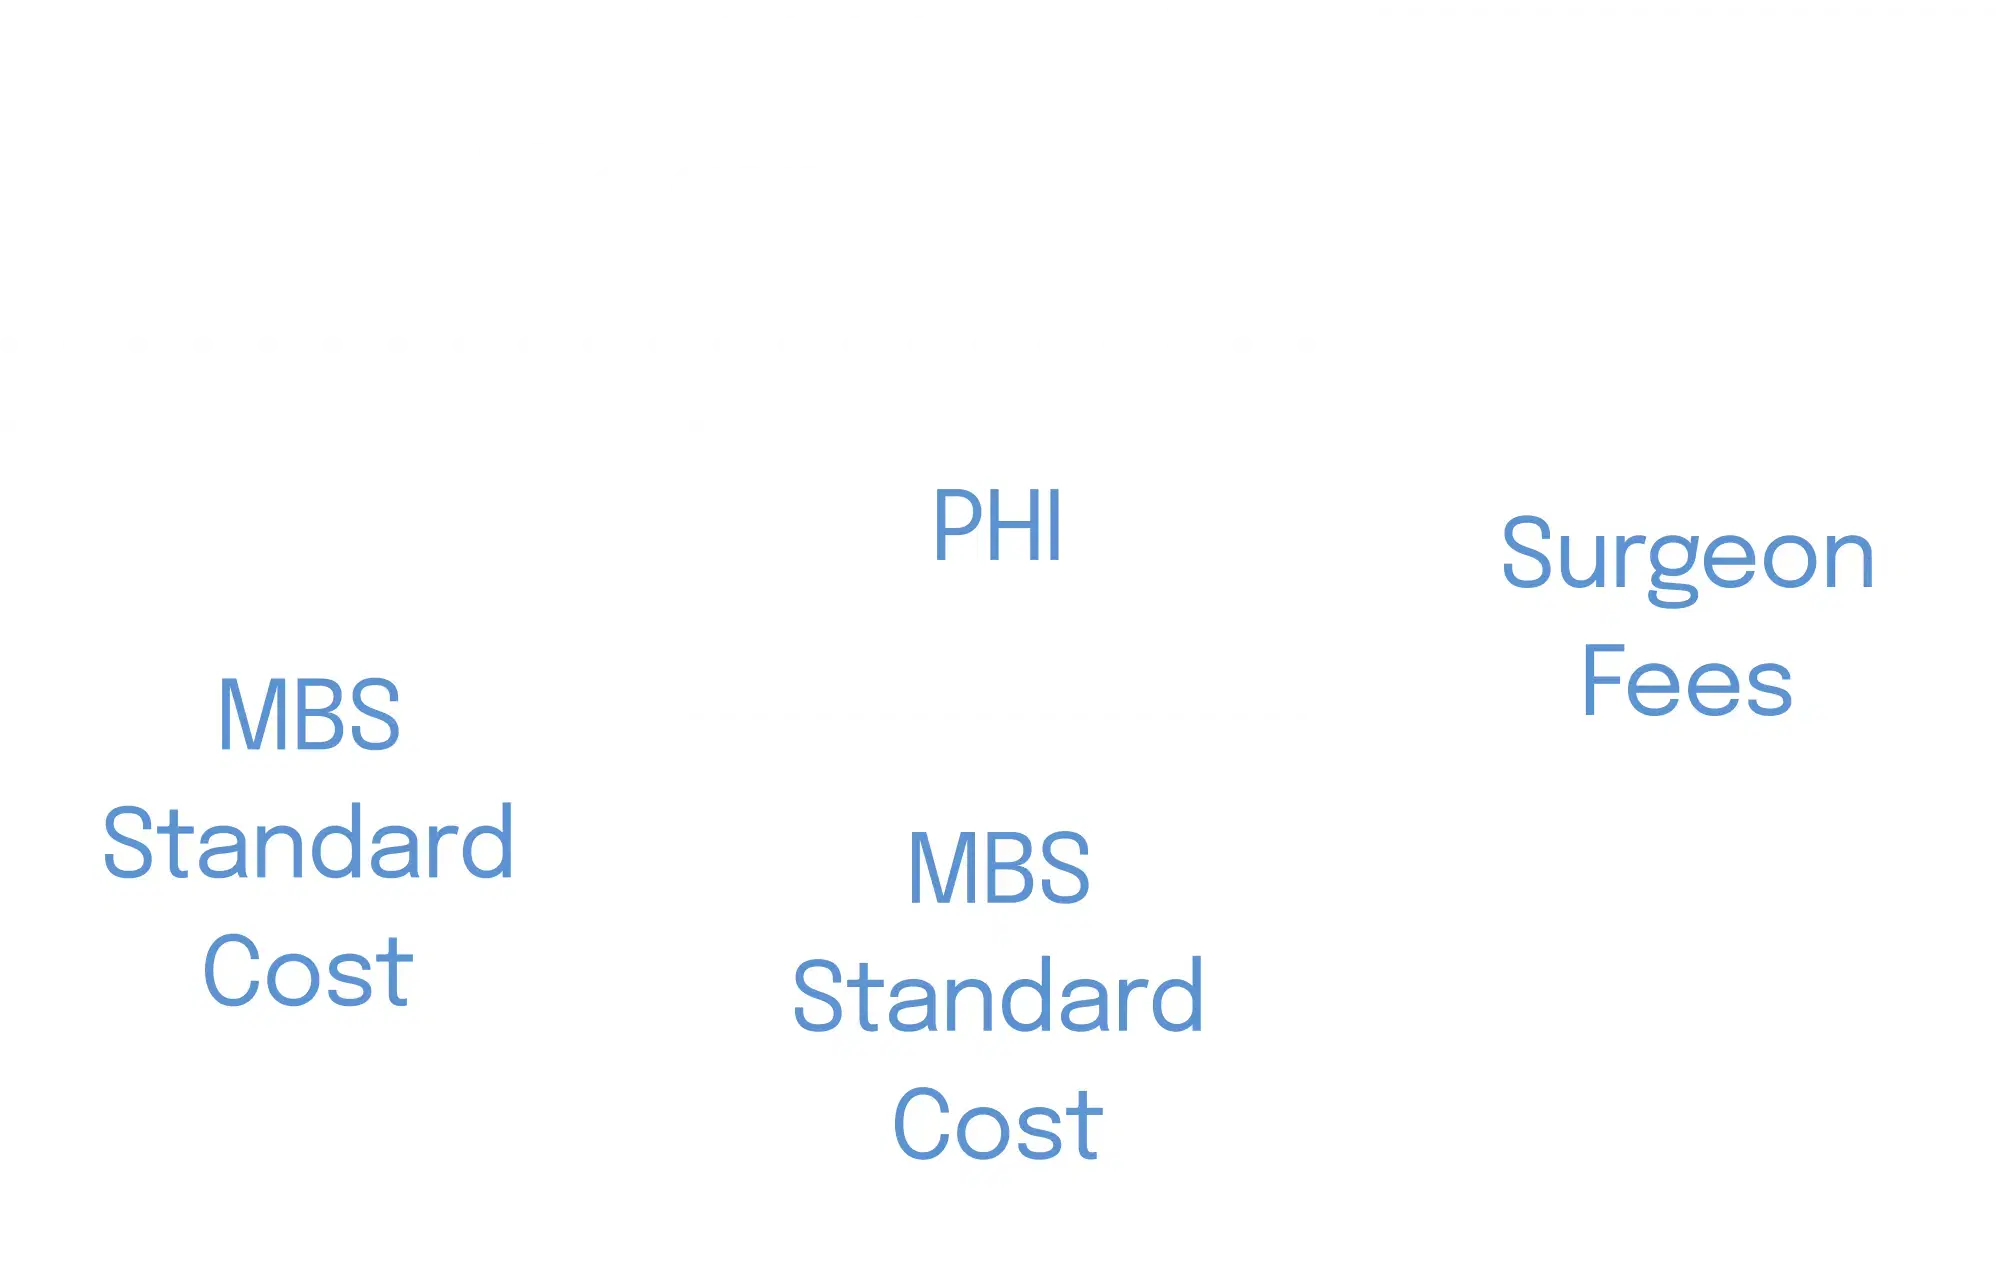 “No Gap” scheme help image